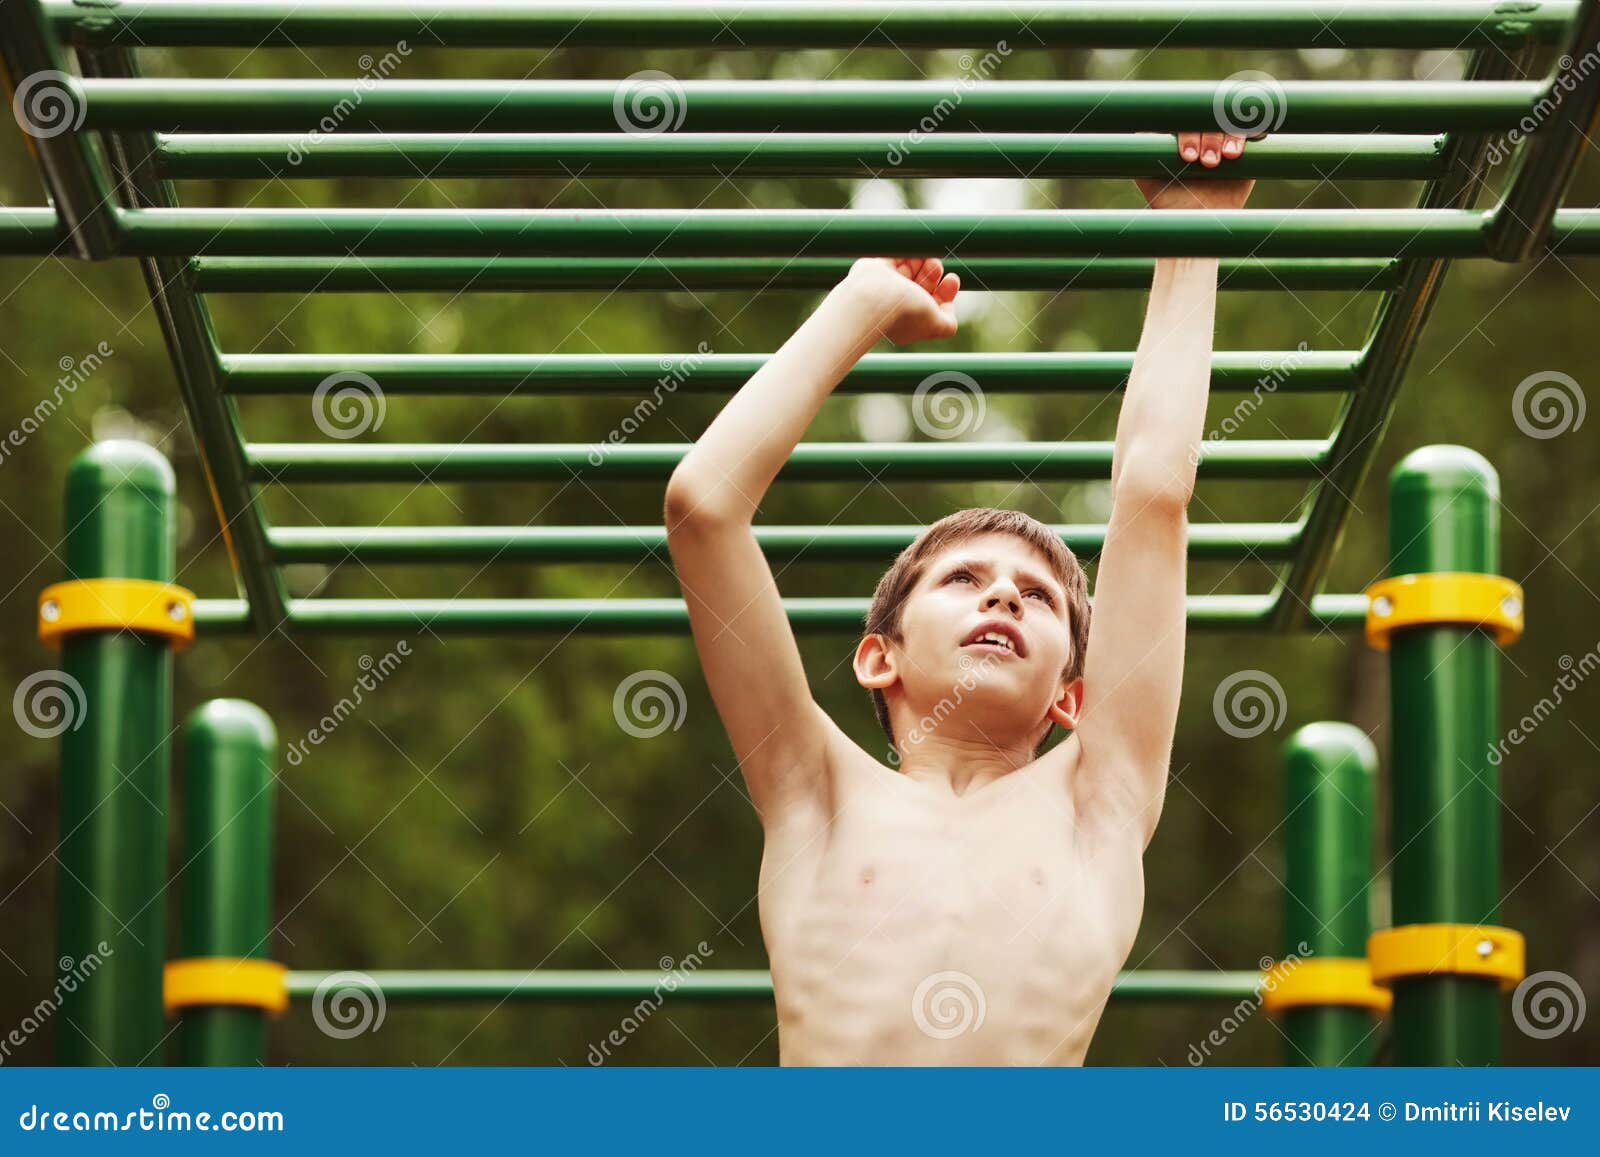 Мальчик на спортивной площадке